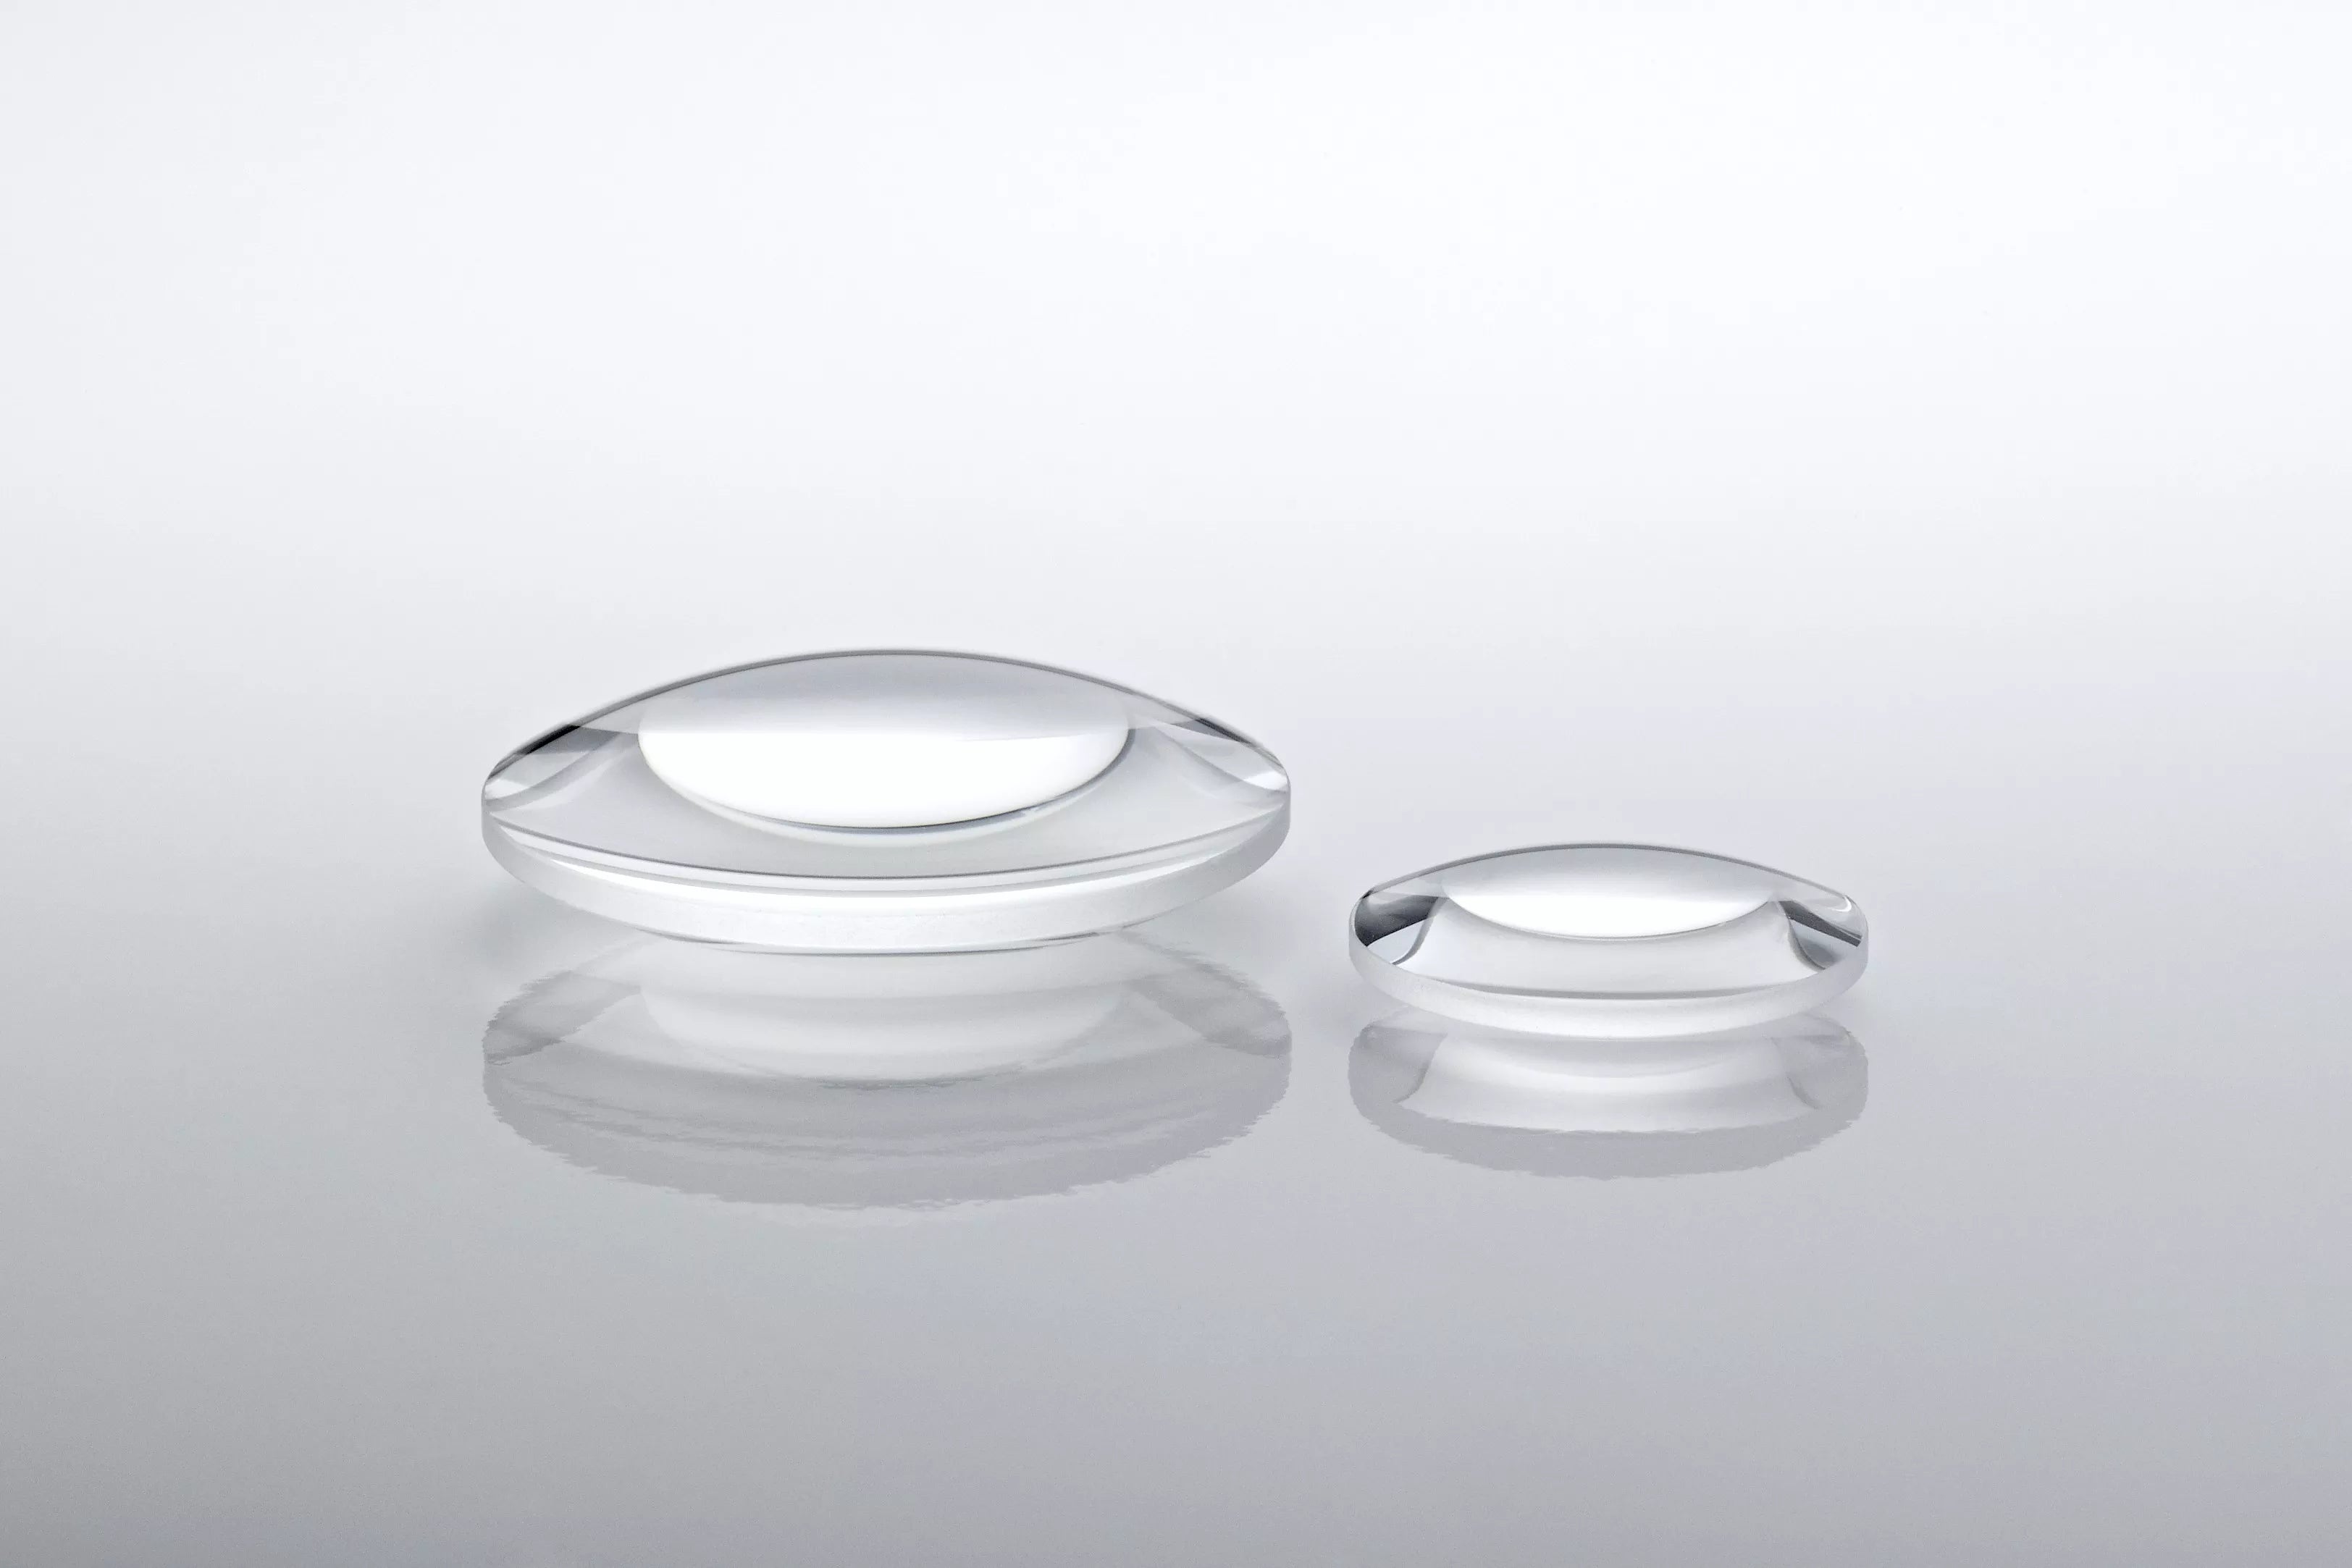 LBC25050-XS-Calcium fluoride lens, 250mmflx50mmdia, Biconvex